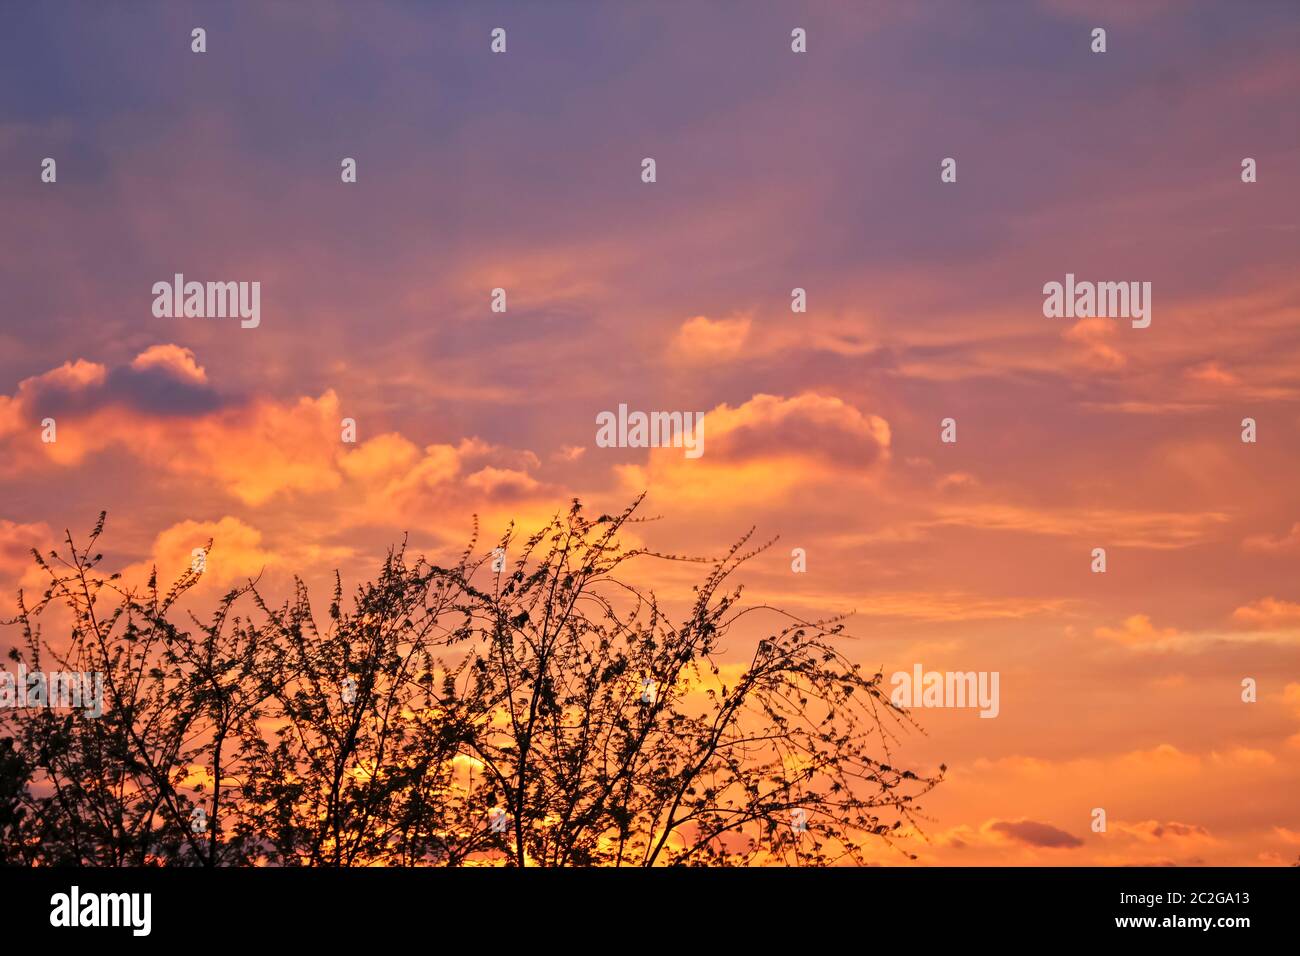 Incredibile belle formazioni di nubi e colori nel cielo, tramonto dietro alberi. Foto Stock